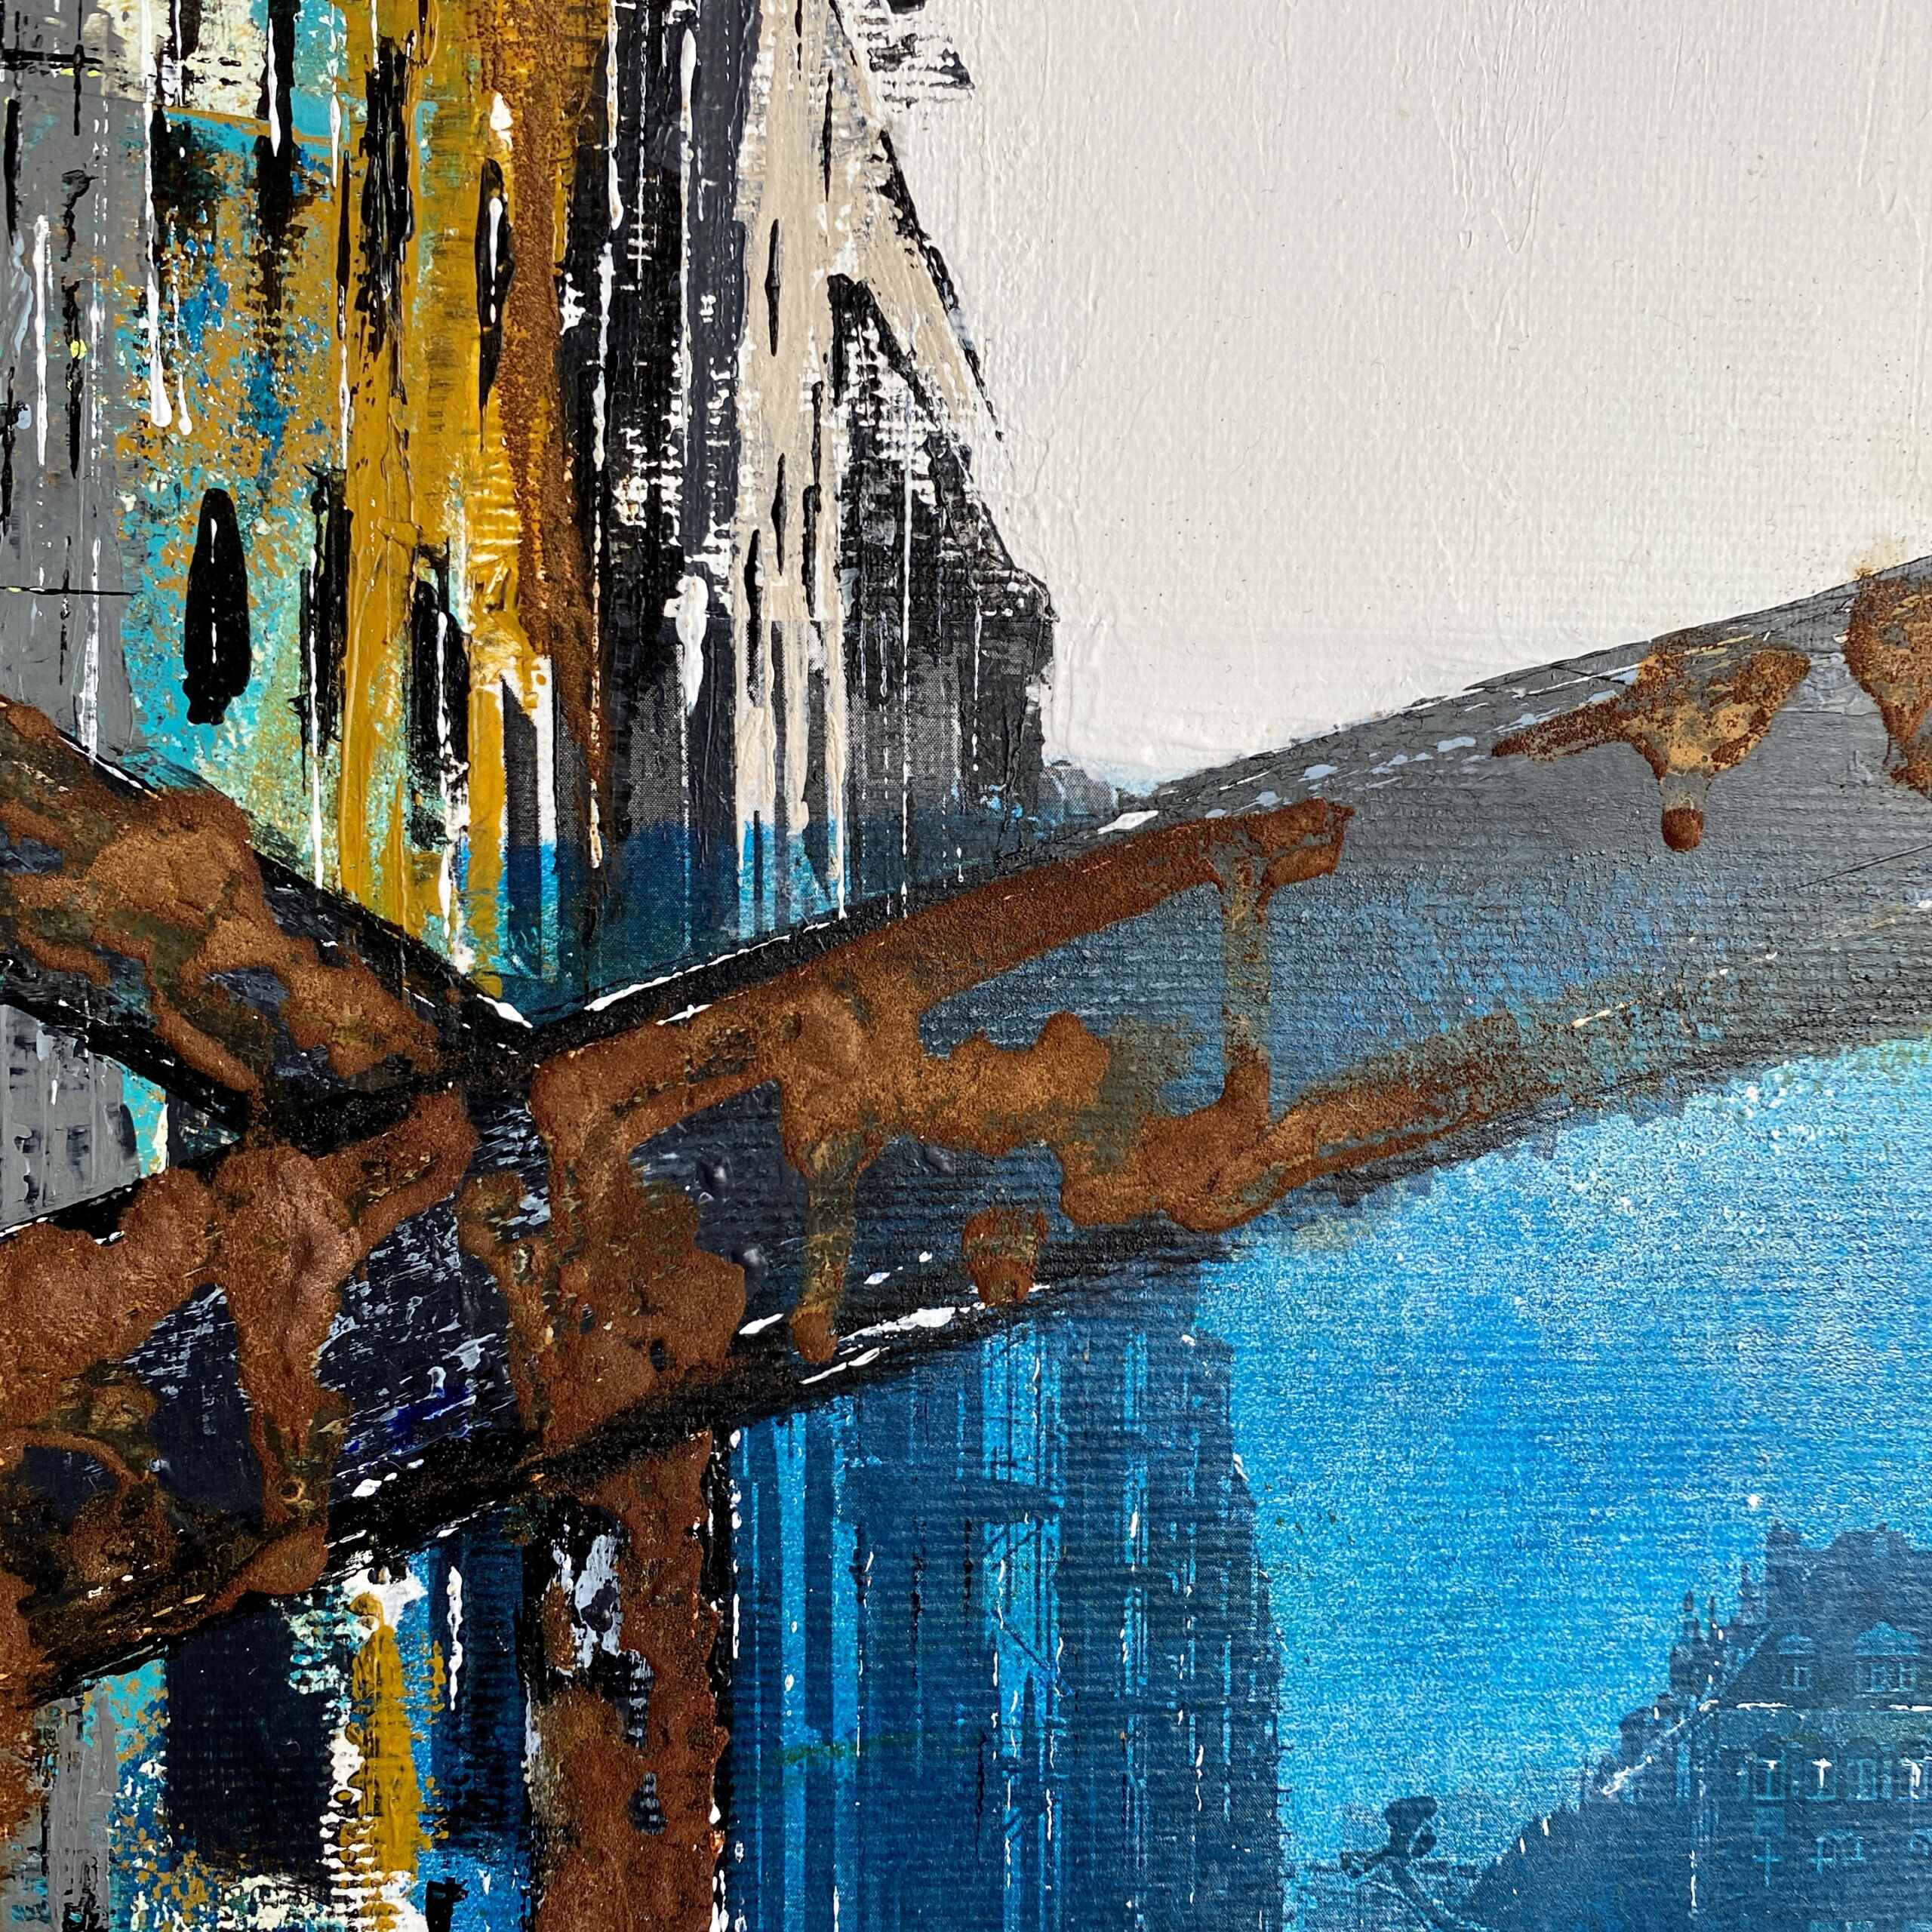 Detail of artwork "Bridges of Hamburg No 1” by Nina Groth